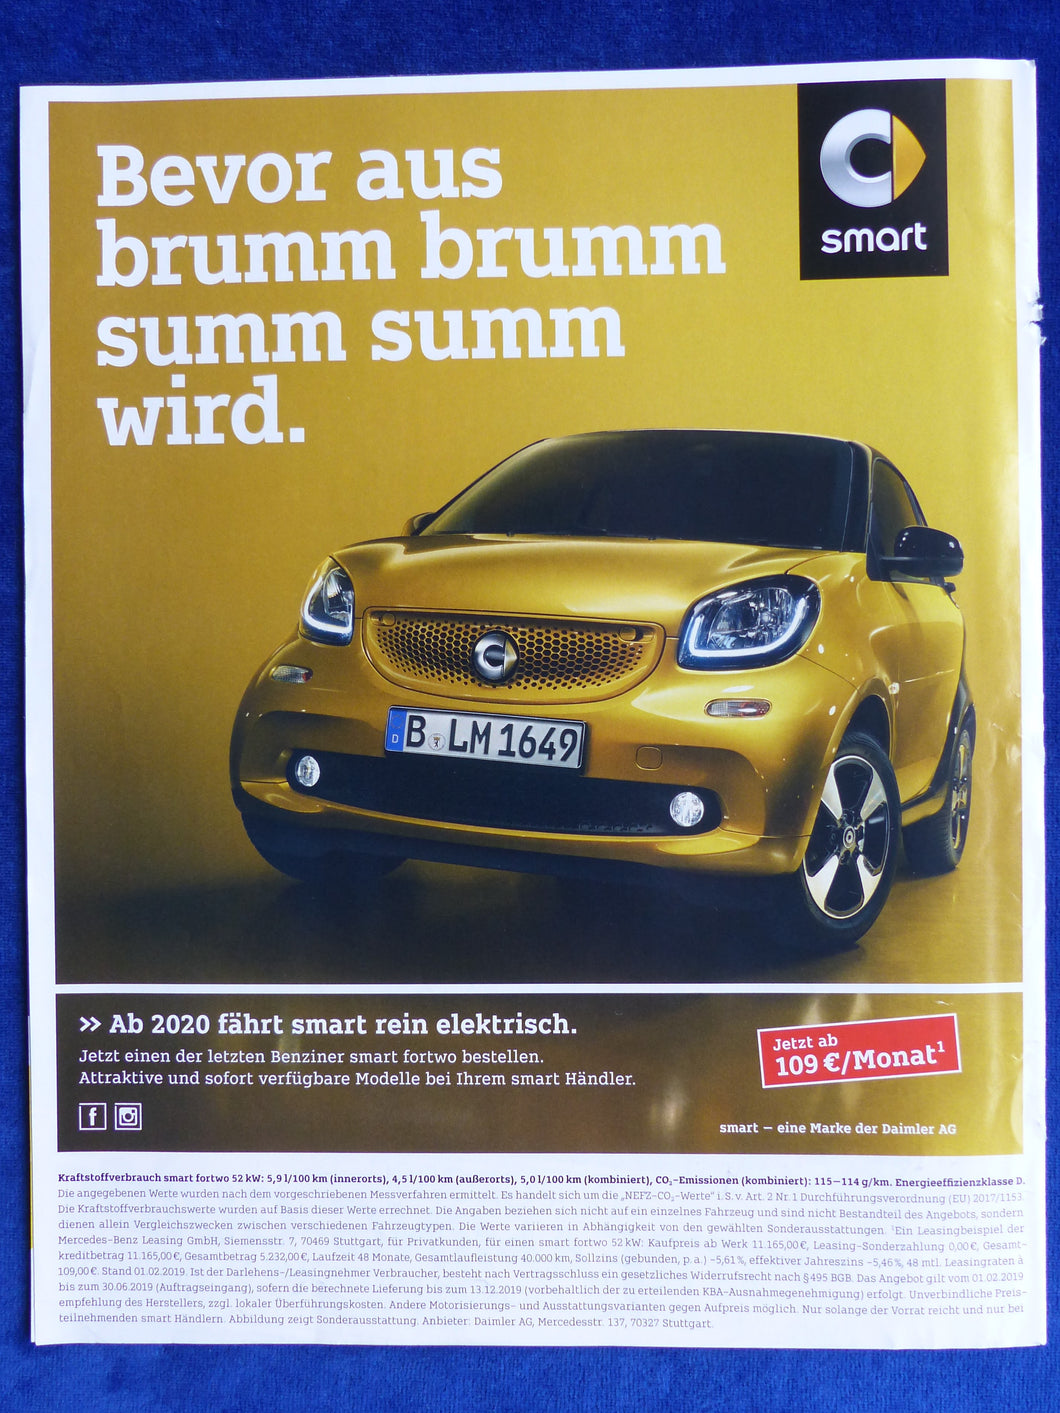 Smart fortwo Benziner - Werbeanzeige Reklame Advertisement 2019